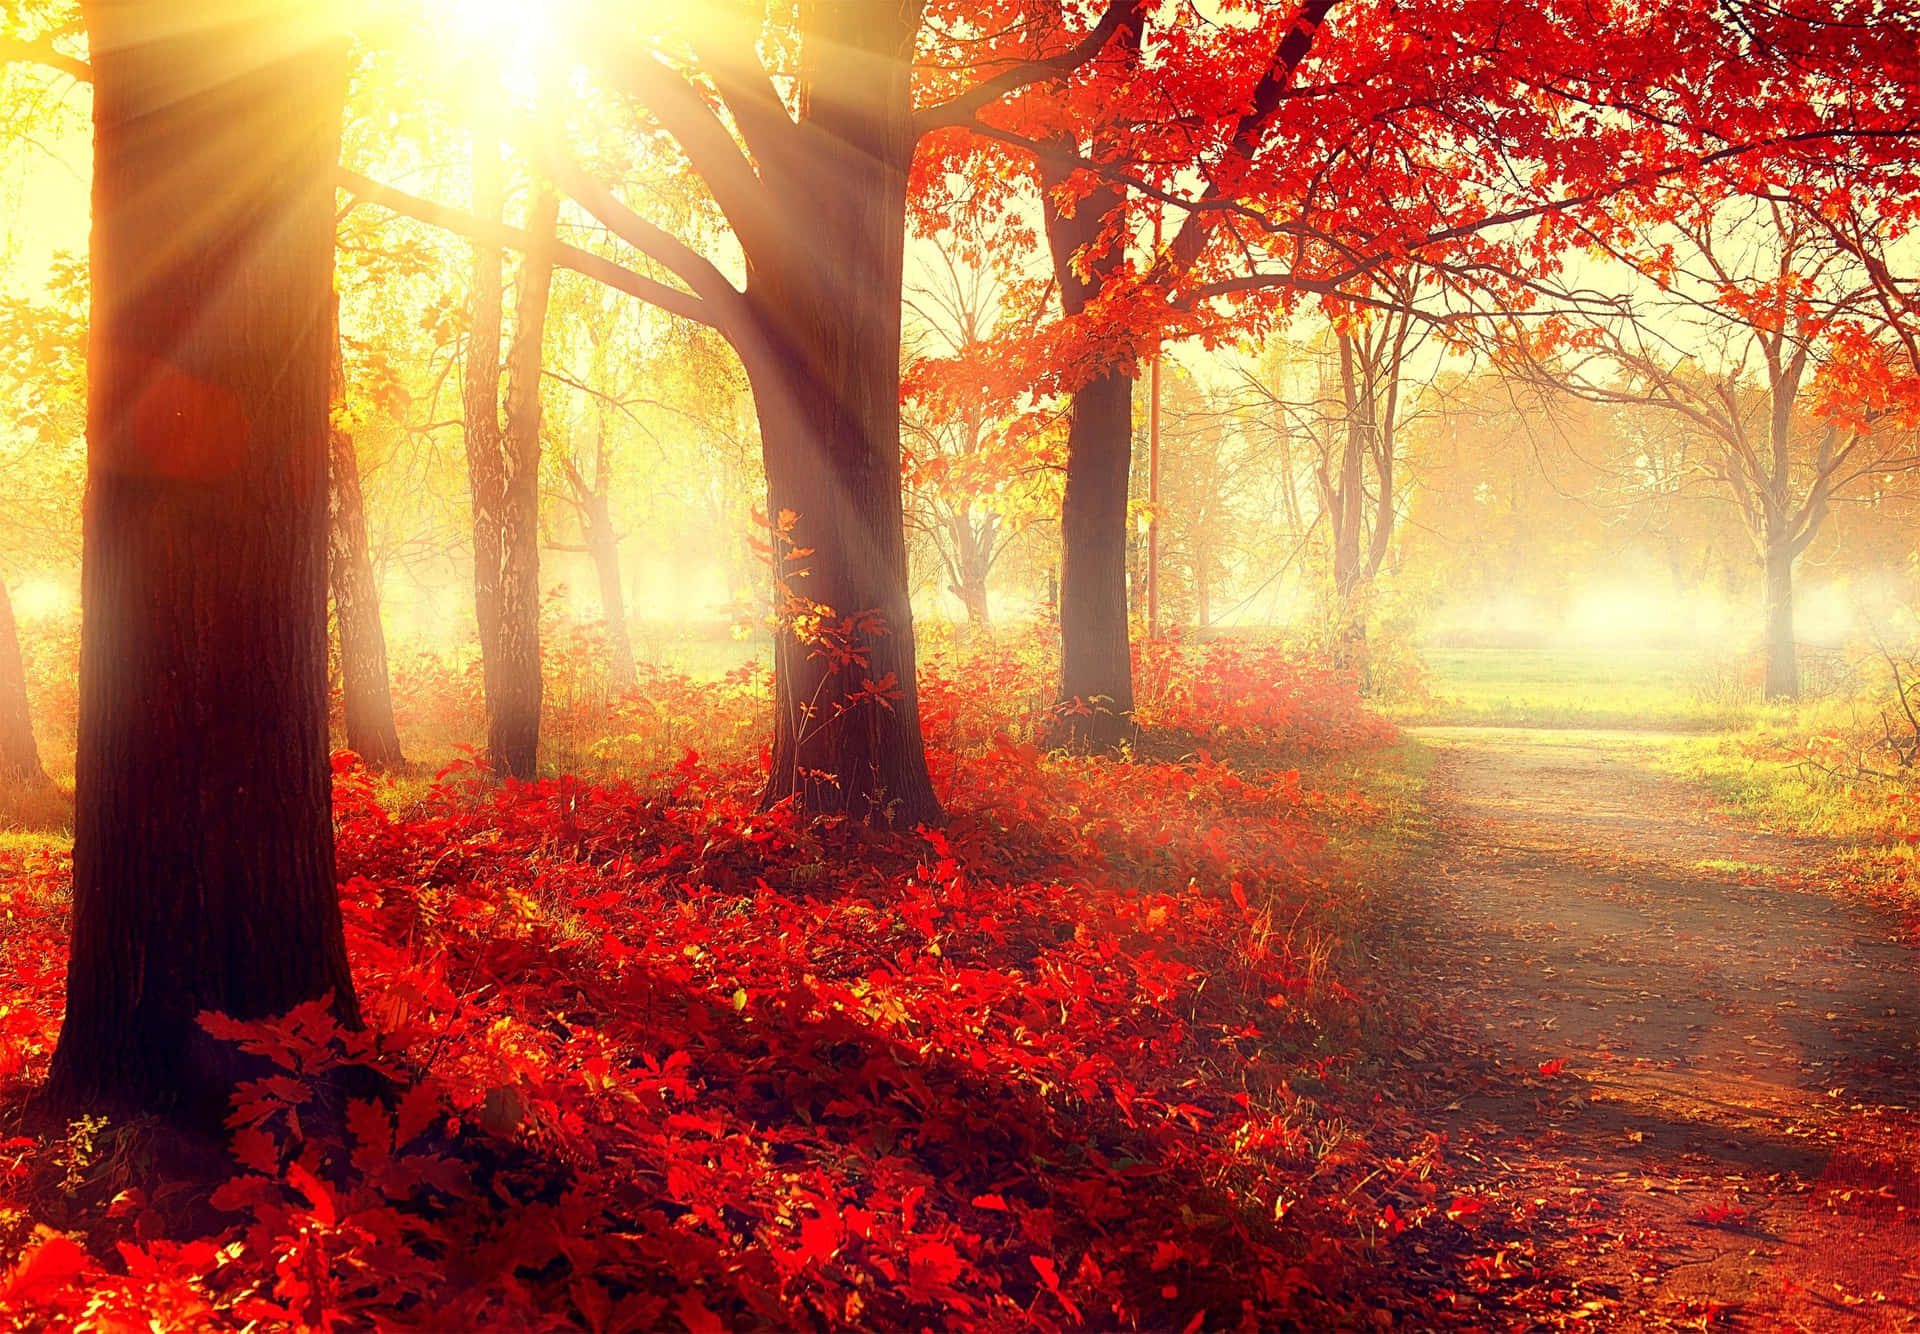 Schönermorgensonnenschein Im Wald Im Herbst Bild Wallpaper